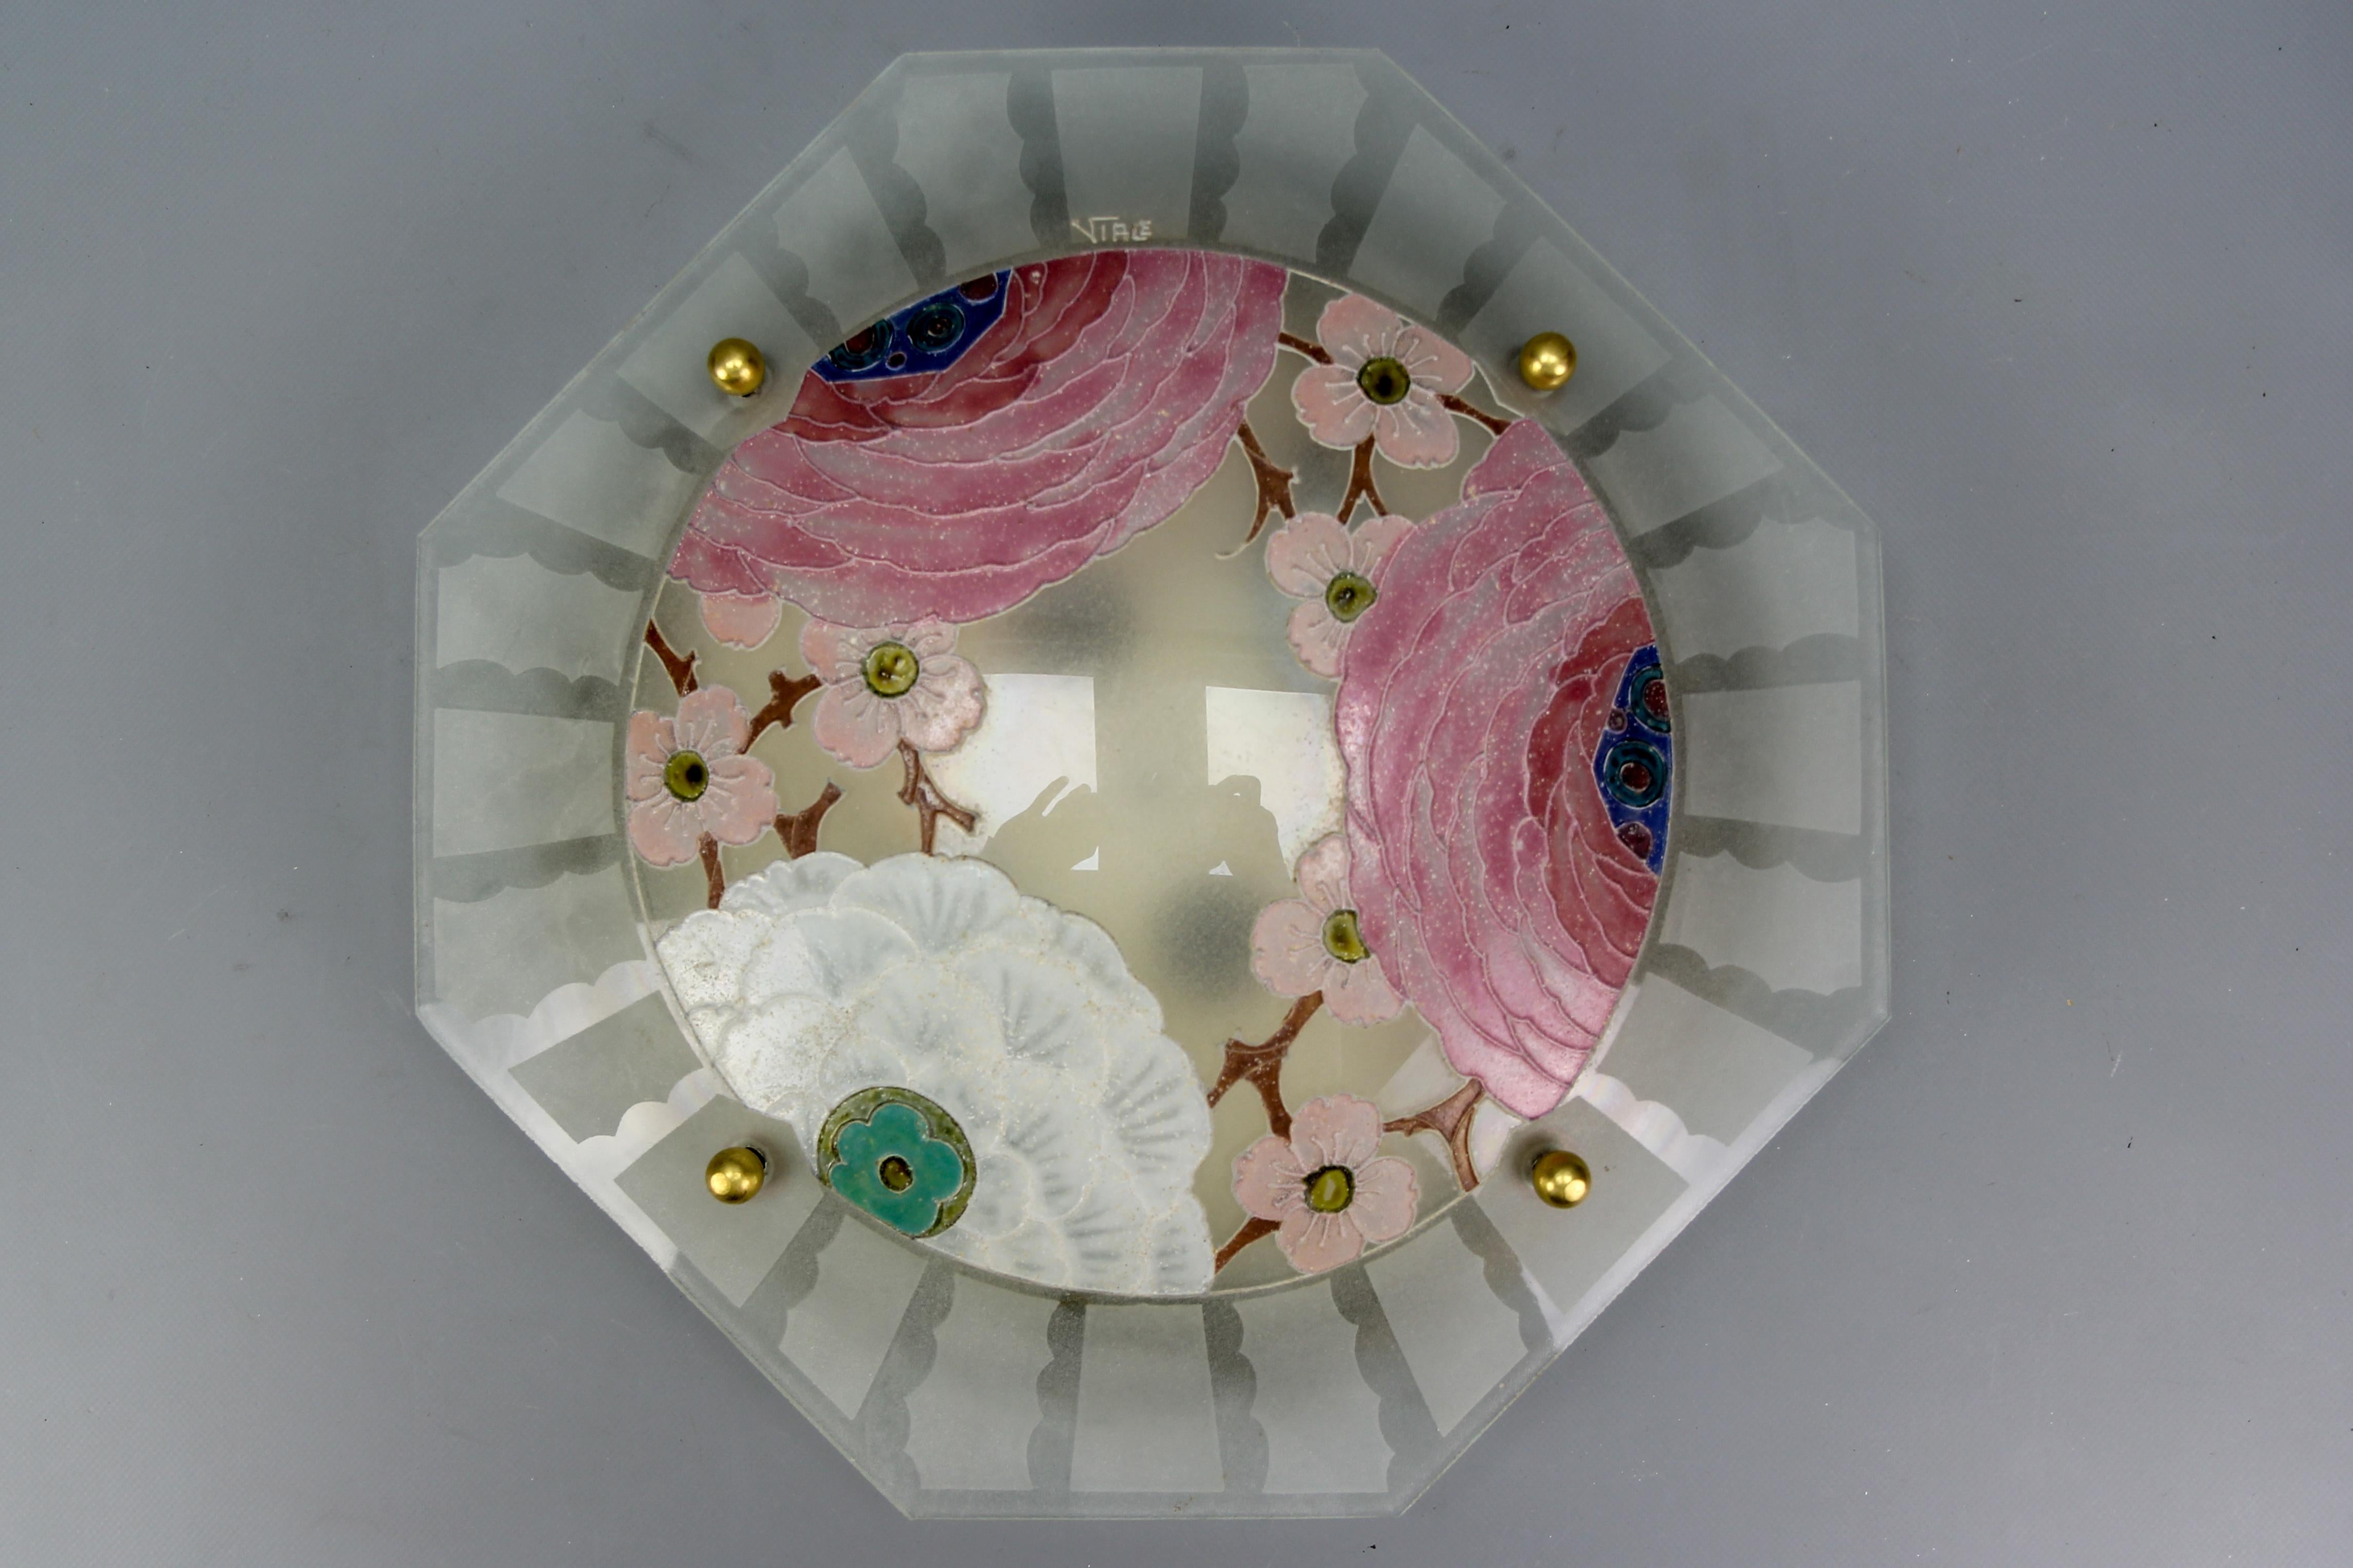 Französisch Art Deco emailliertem Glas flush mount mit Pastell Farbe Blumen signiert Viale, circa den 1930er Jahren.
Diese bezaubernde Unterputzleuchte hat einen wunderschönen achteckigen Lampenschirm aus Milchglas mit stilisierten, handgemalten